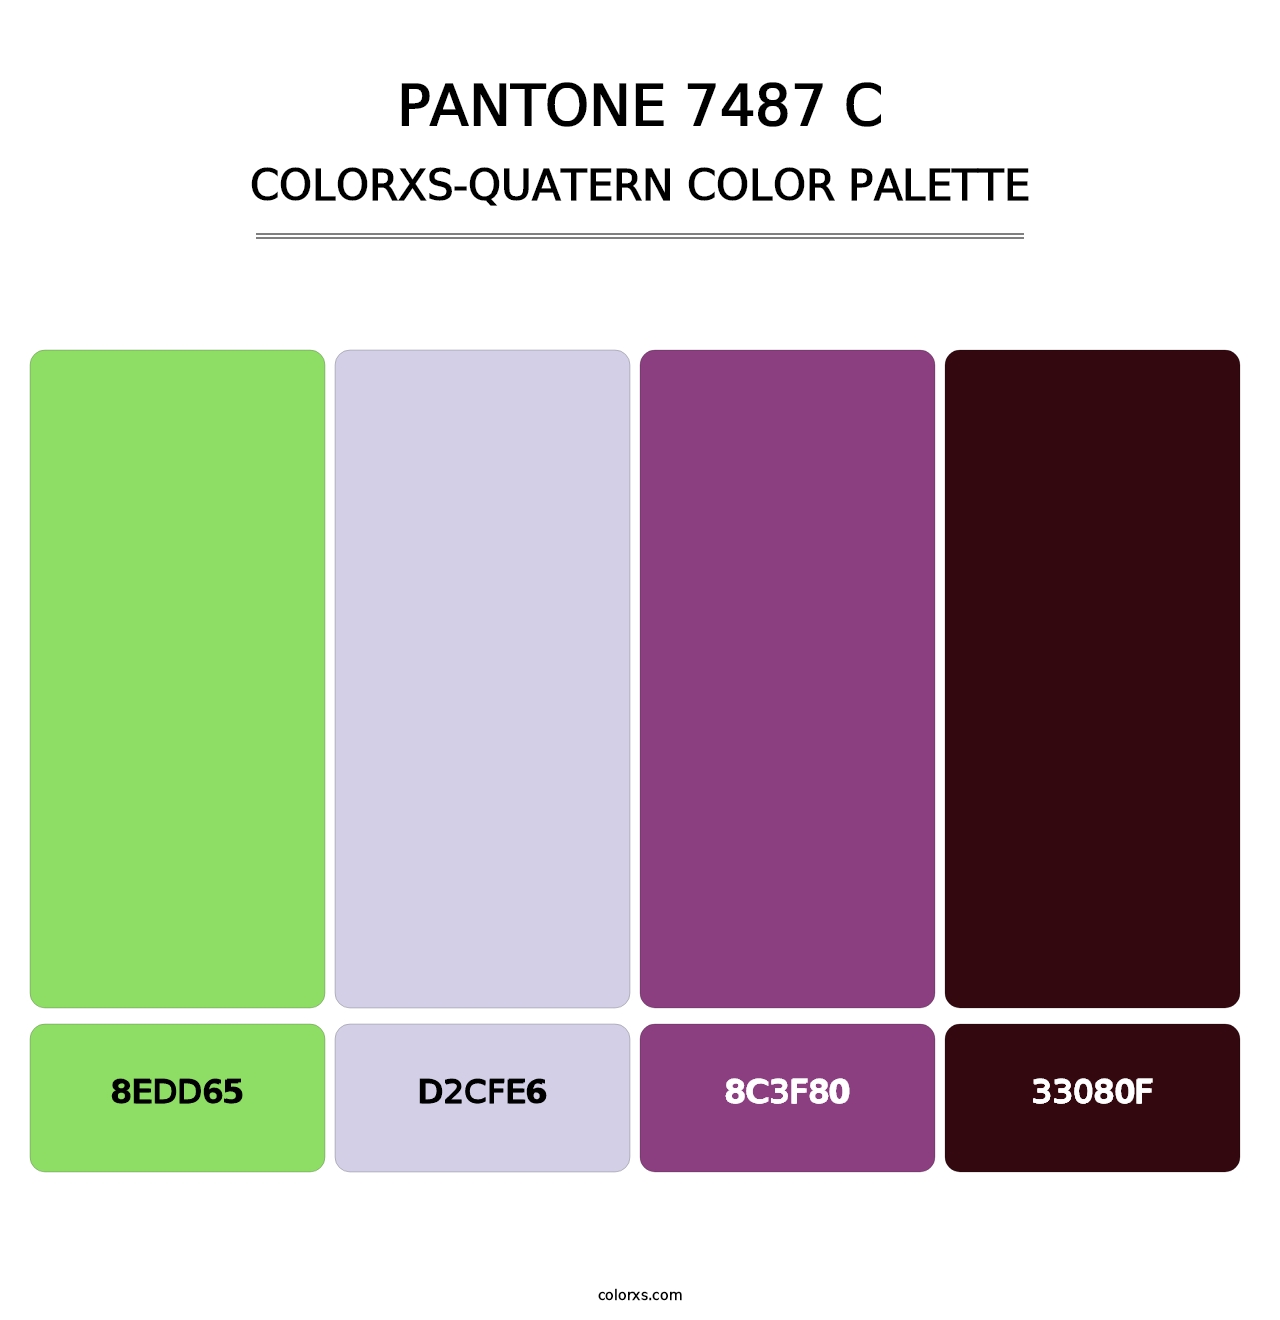 PANTONE 7487 C - Colorxs Quatern Palette